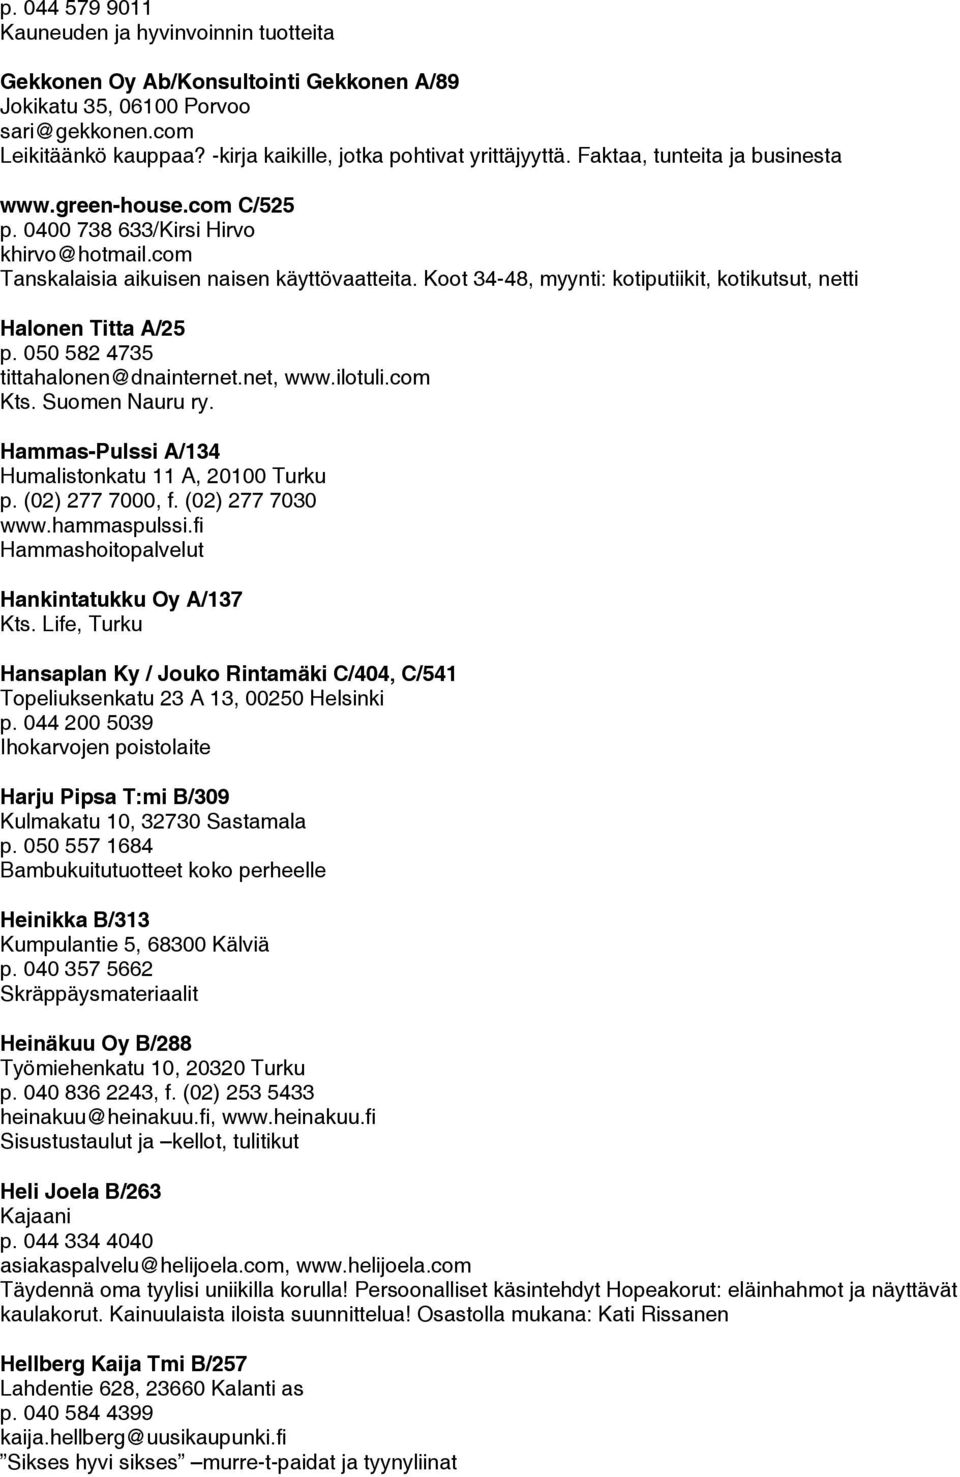 Koot 34-48, myynti: kotiputiikit, kotikutsut, netti Halonen Titta A/25 p. 050 582 4735 tittahalonen@dnainternet.net, www.ilotuli.com Kts. Suomen Nauru ry.